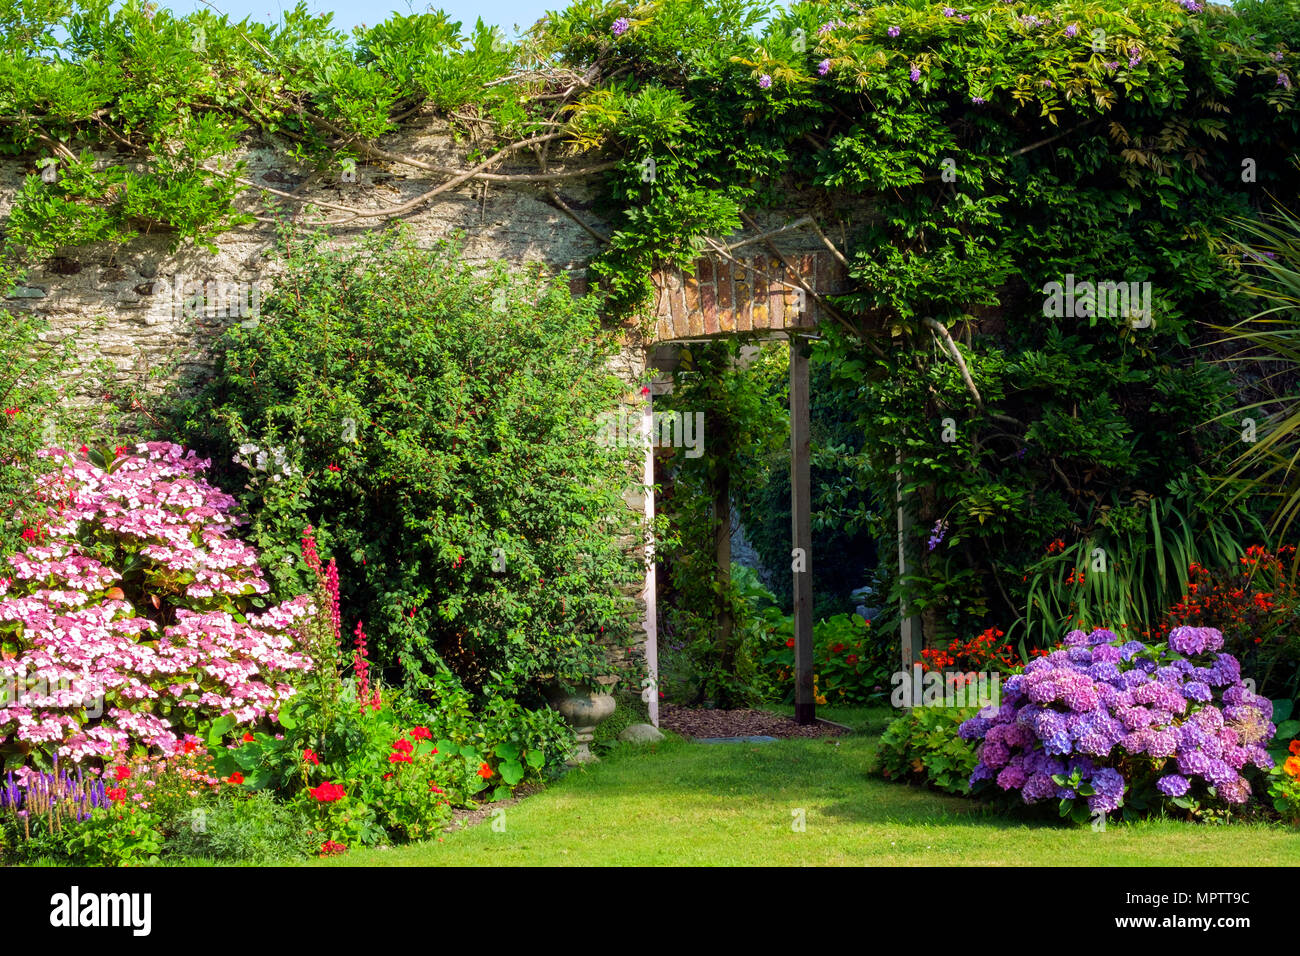 Giardini del Regno Unito. Una bella estate giardino murato aiuola di confine display comprendente vari ortensie. Una porta aperta mostra uno scorcio di un walled garden vegetali al di là. Foto Stock